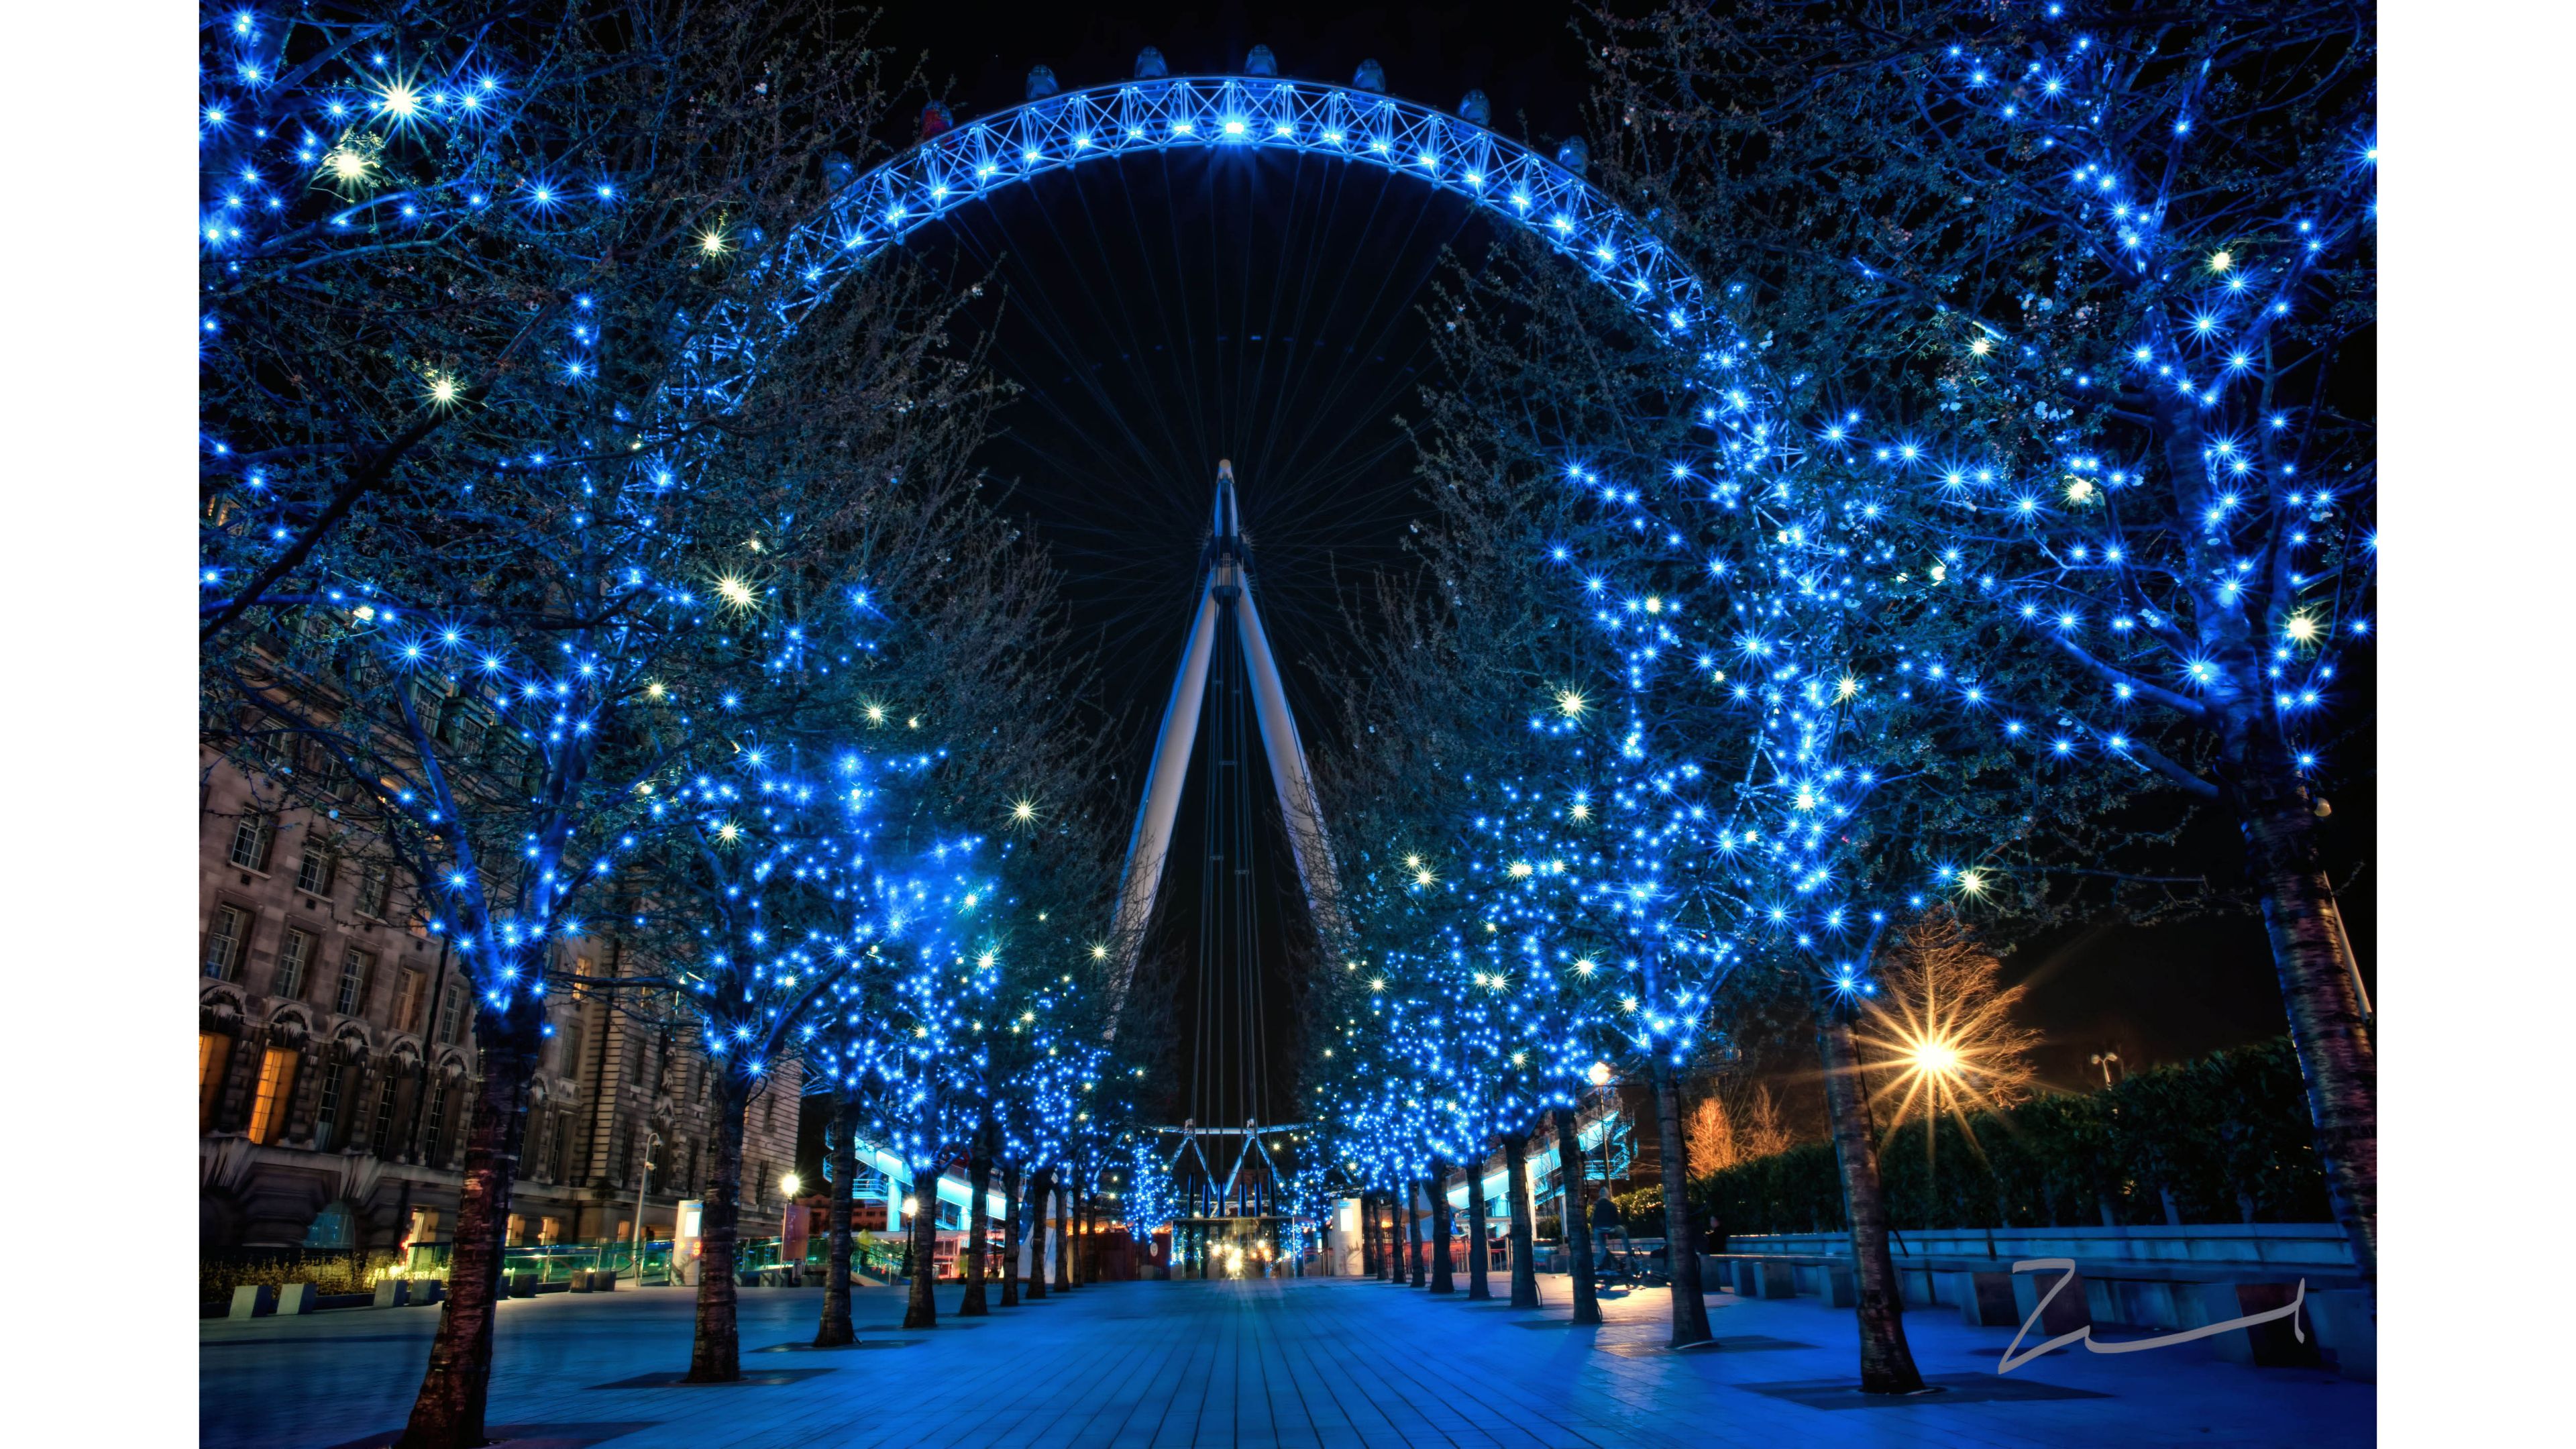 Best 4k London Wallpaper - London Eye At Night 4k - HD Wallpaper 